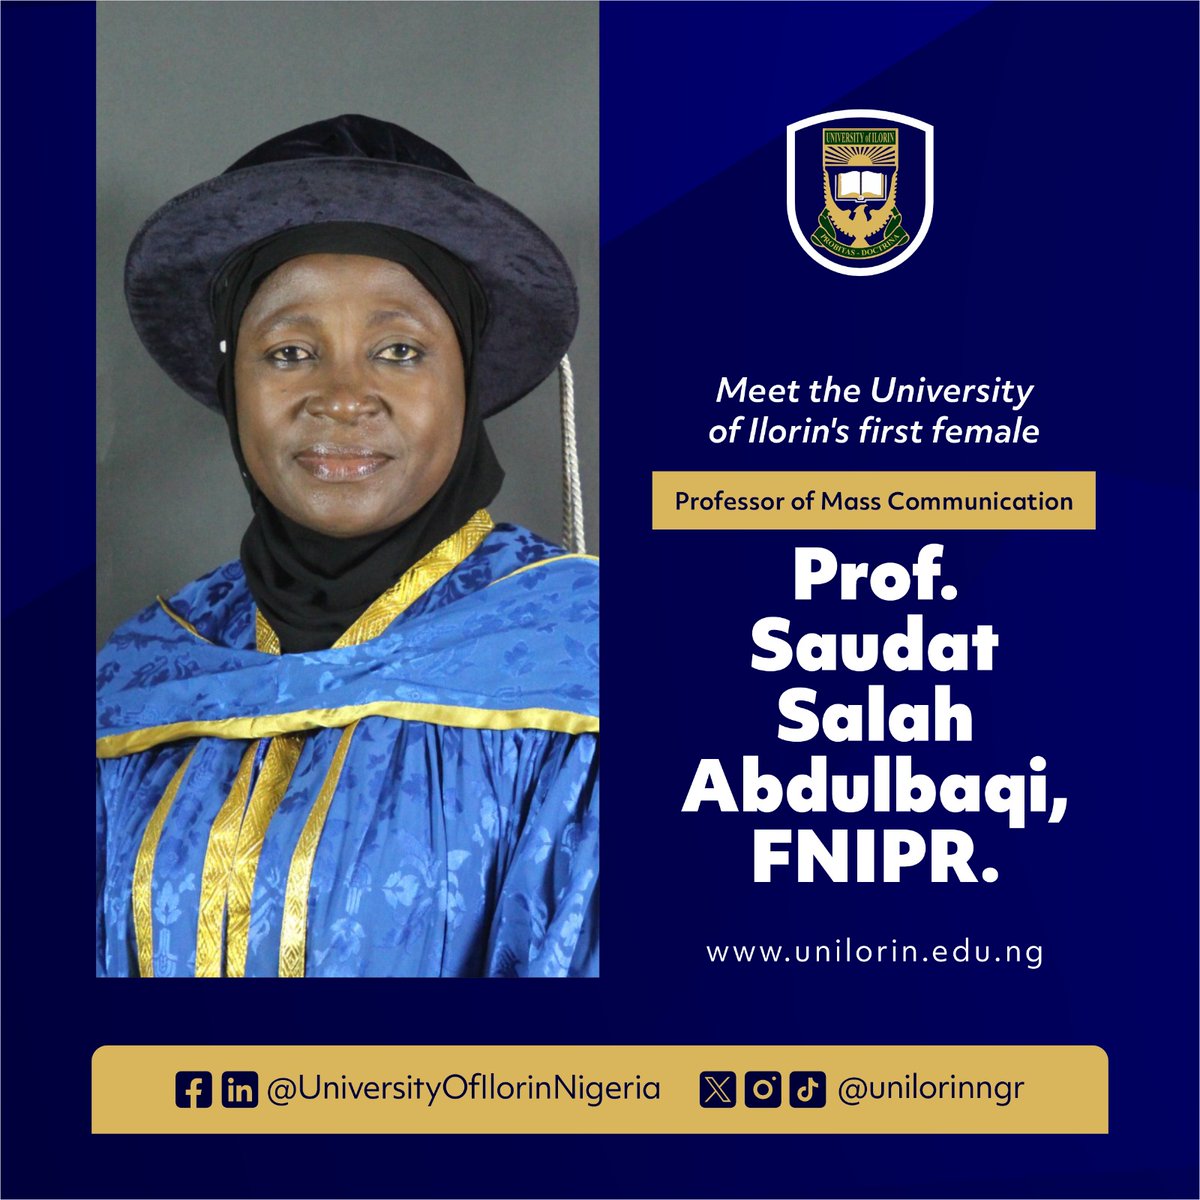 Meet UNILORIN's first female Professor of Mass Communication, Prof. Saudat Salah Abdulbaqi, FNIPR.

#BetterByFar🎓 
#AcademicSuccess